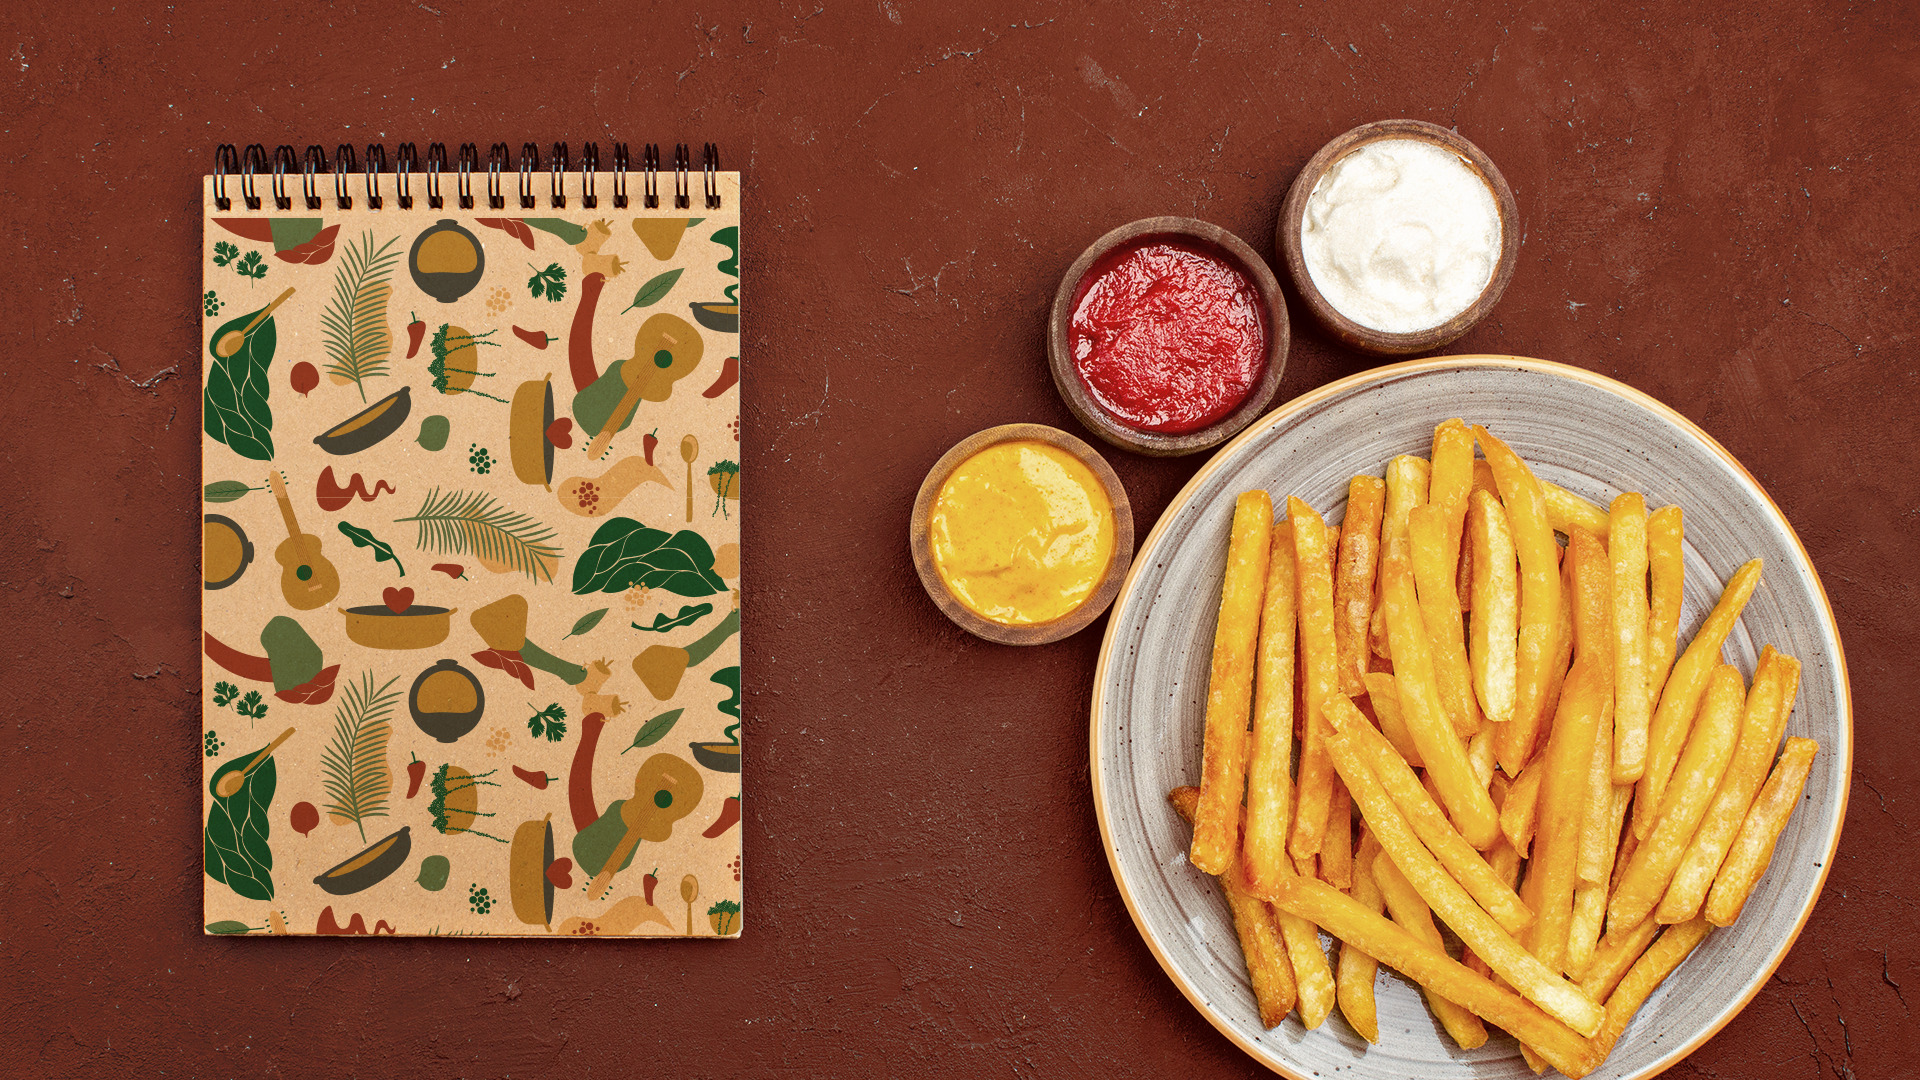 Caderneta com padronagem da marca Raízes e porção de batata frita com molhos